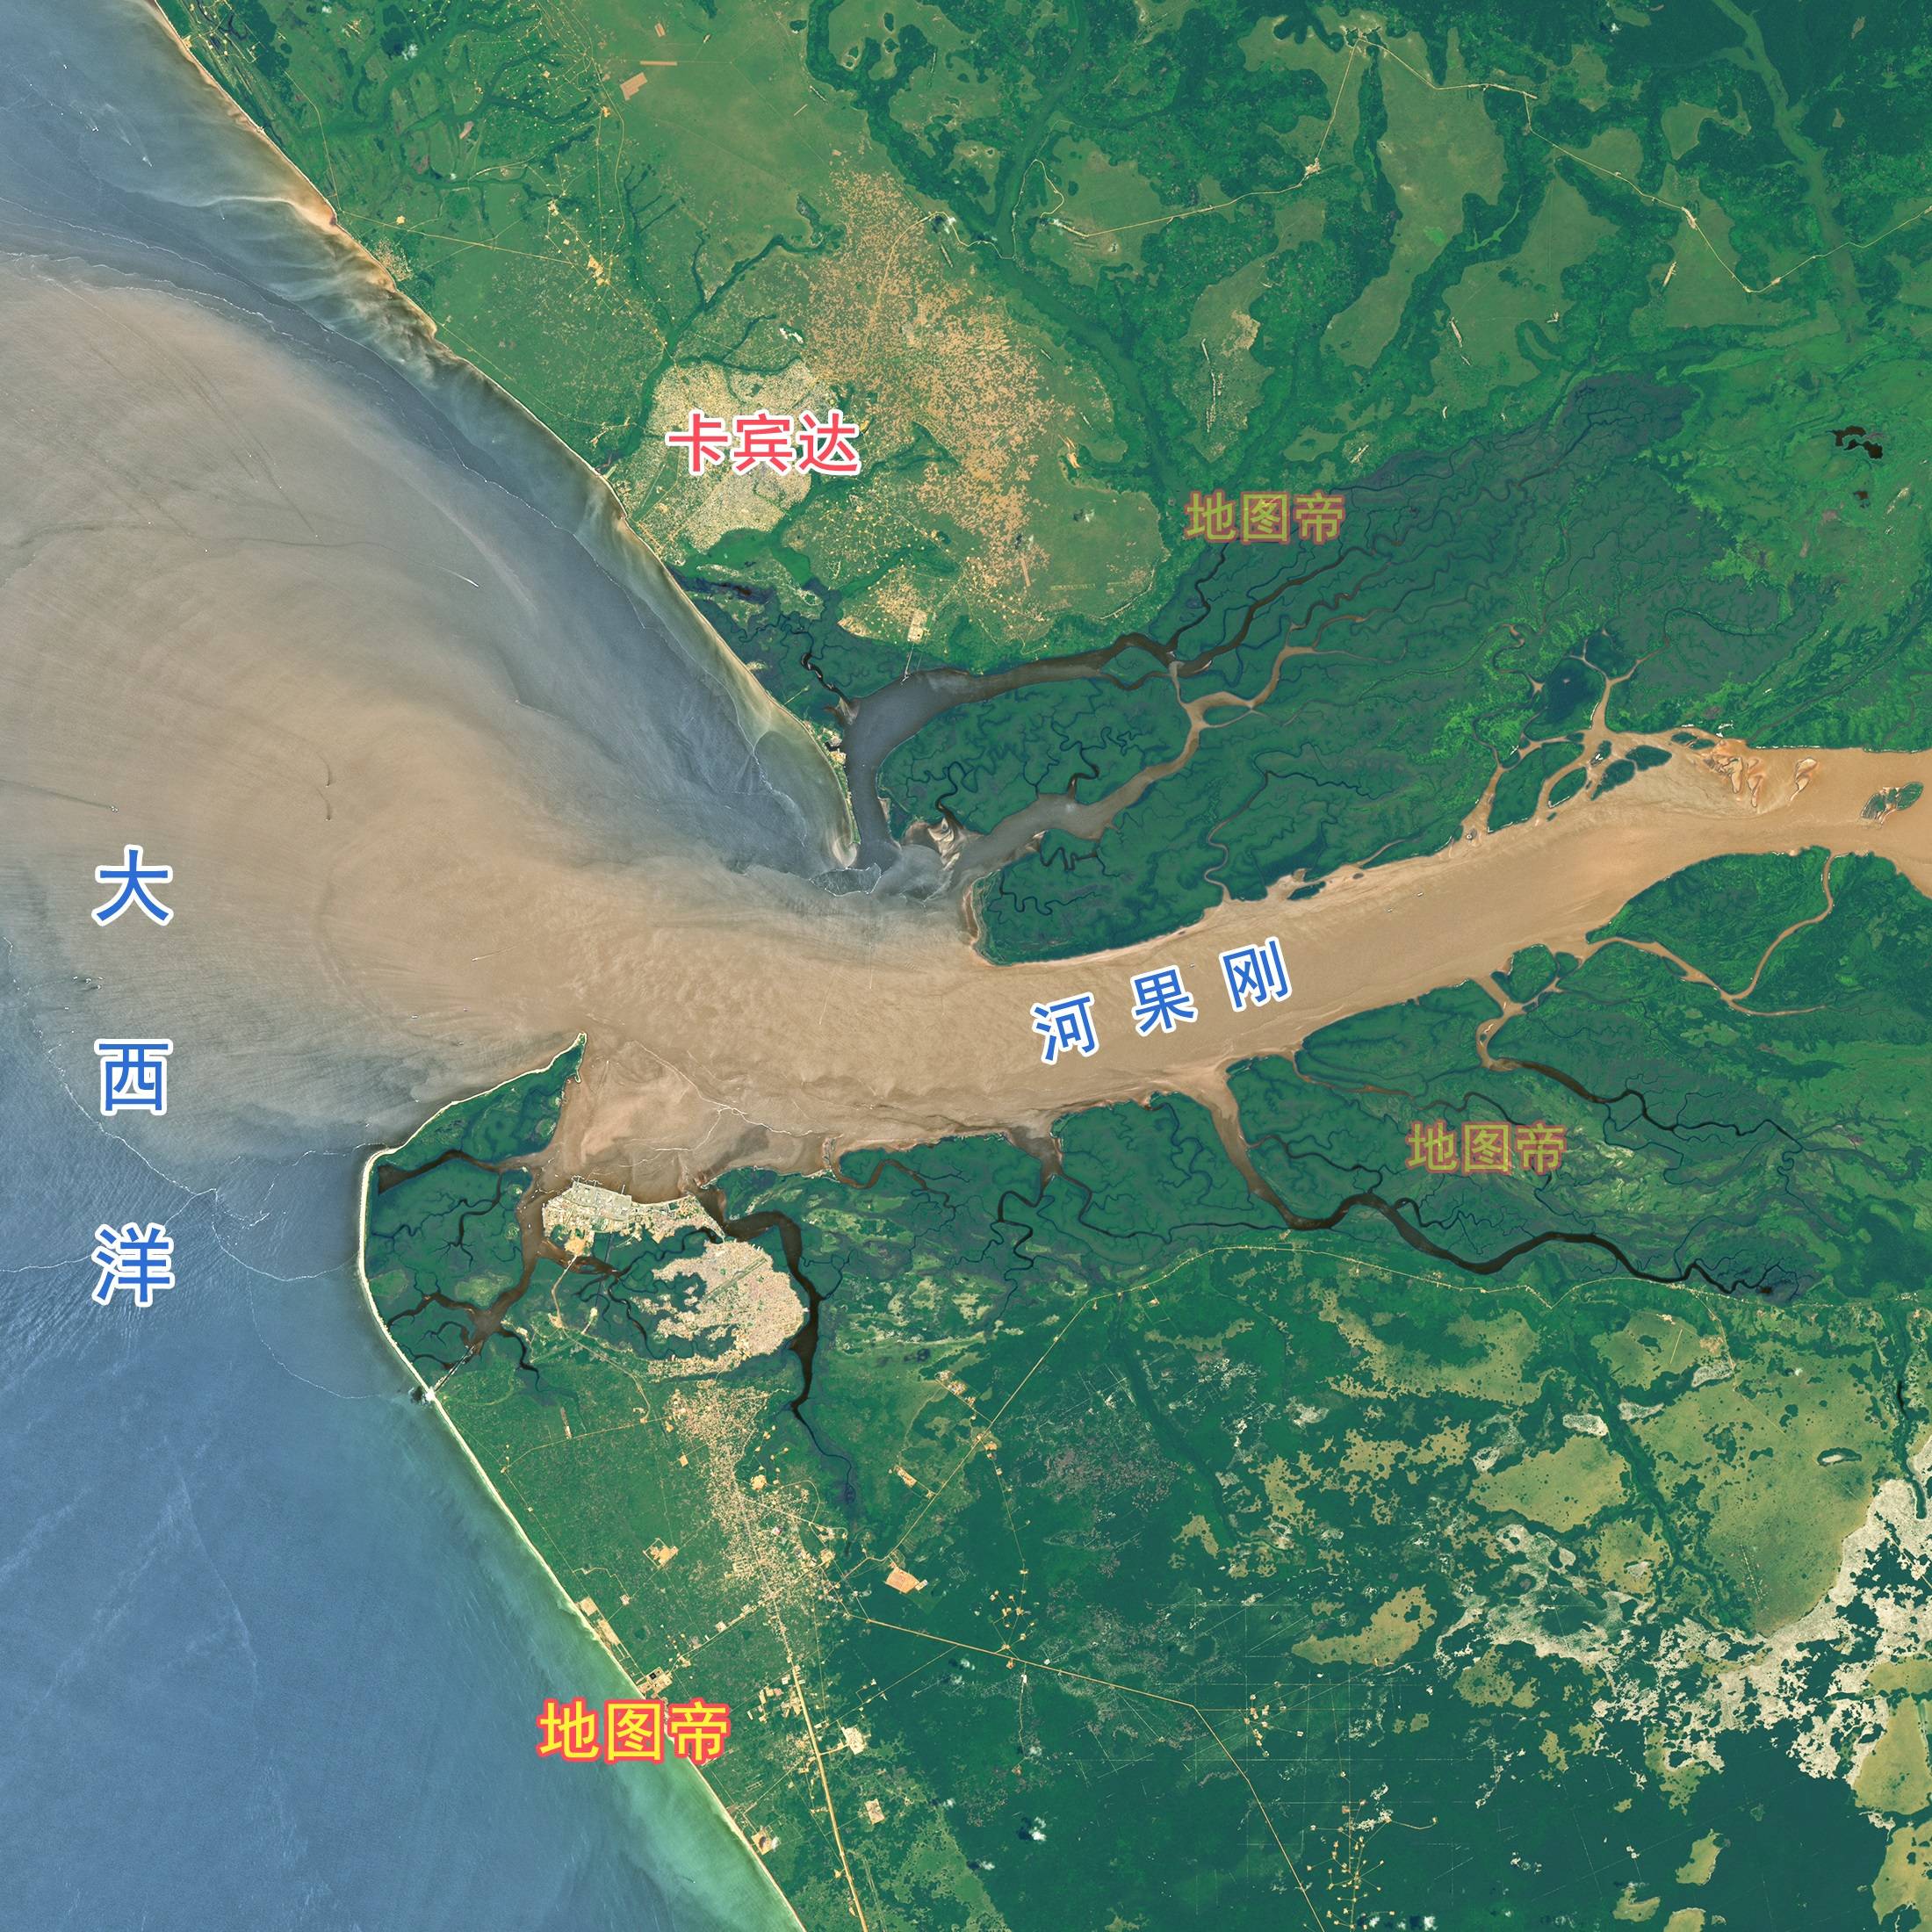 卡宾达则位于刚果河的入海口